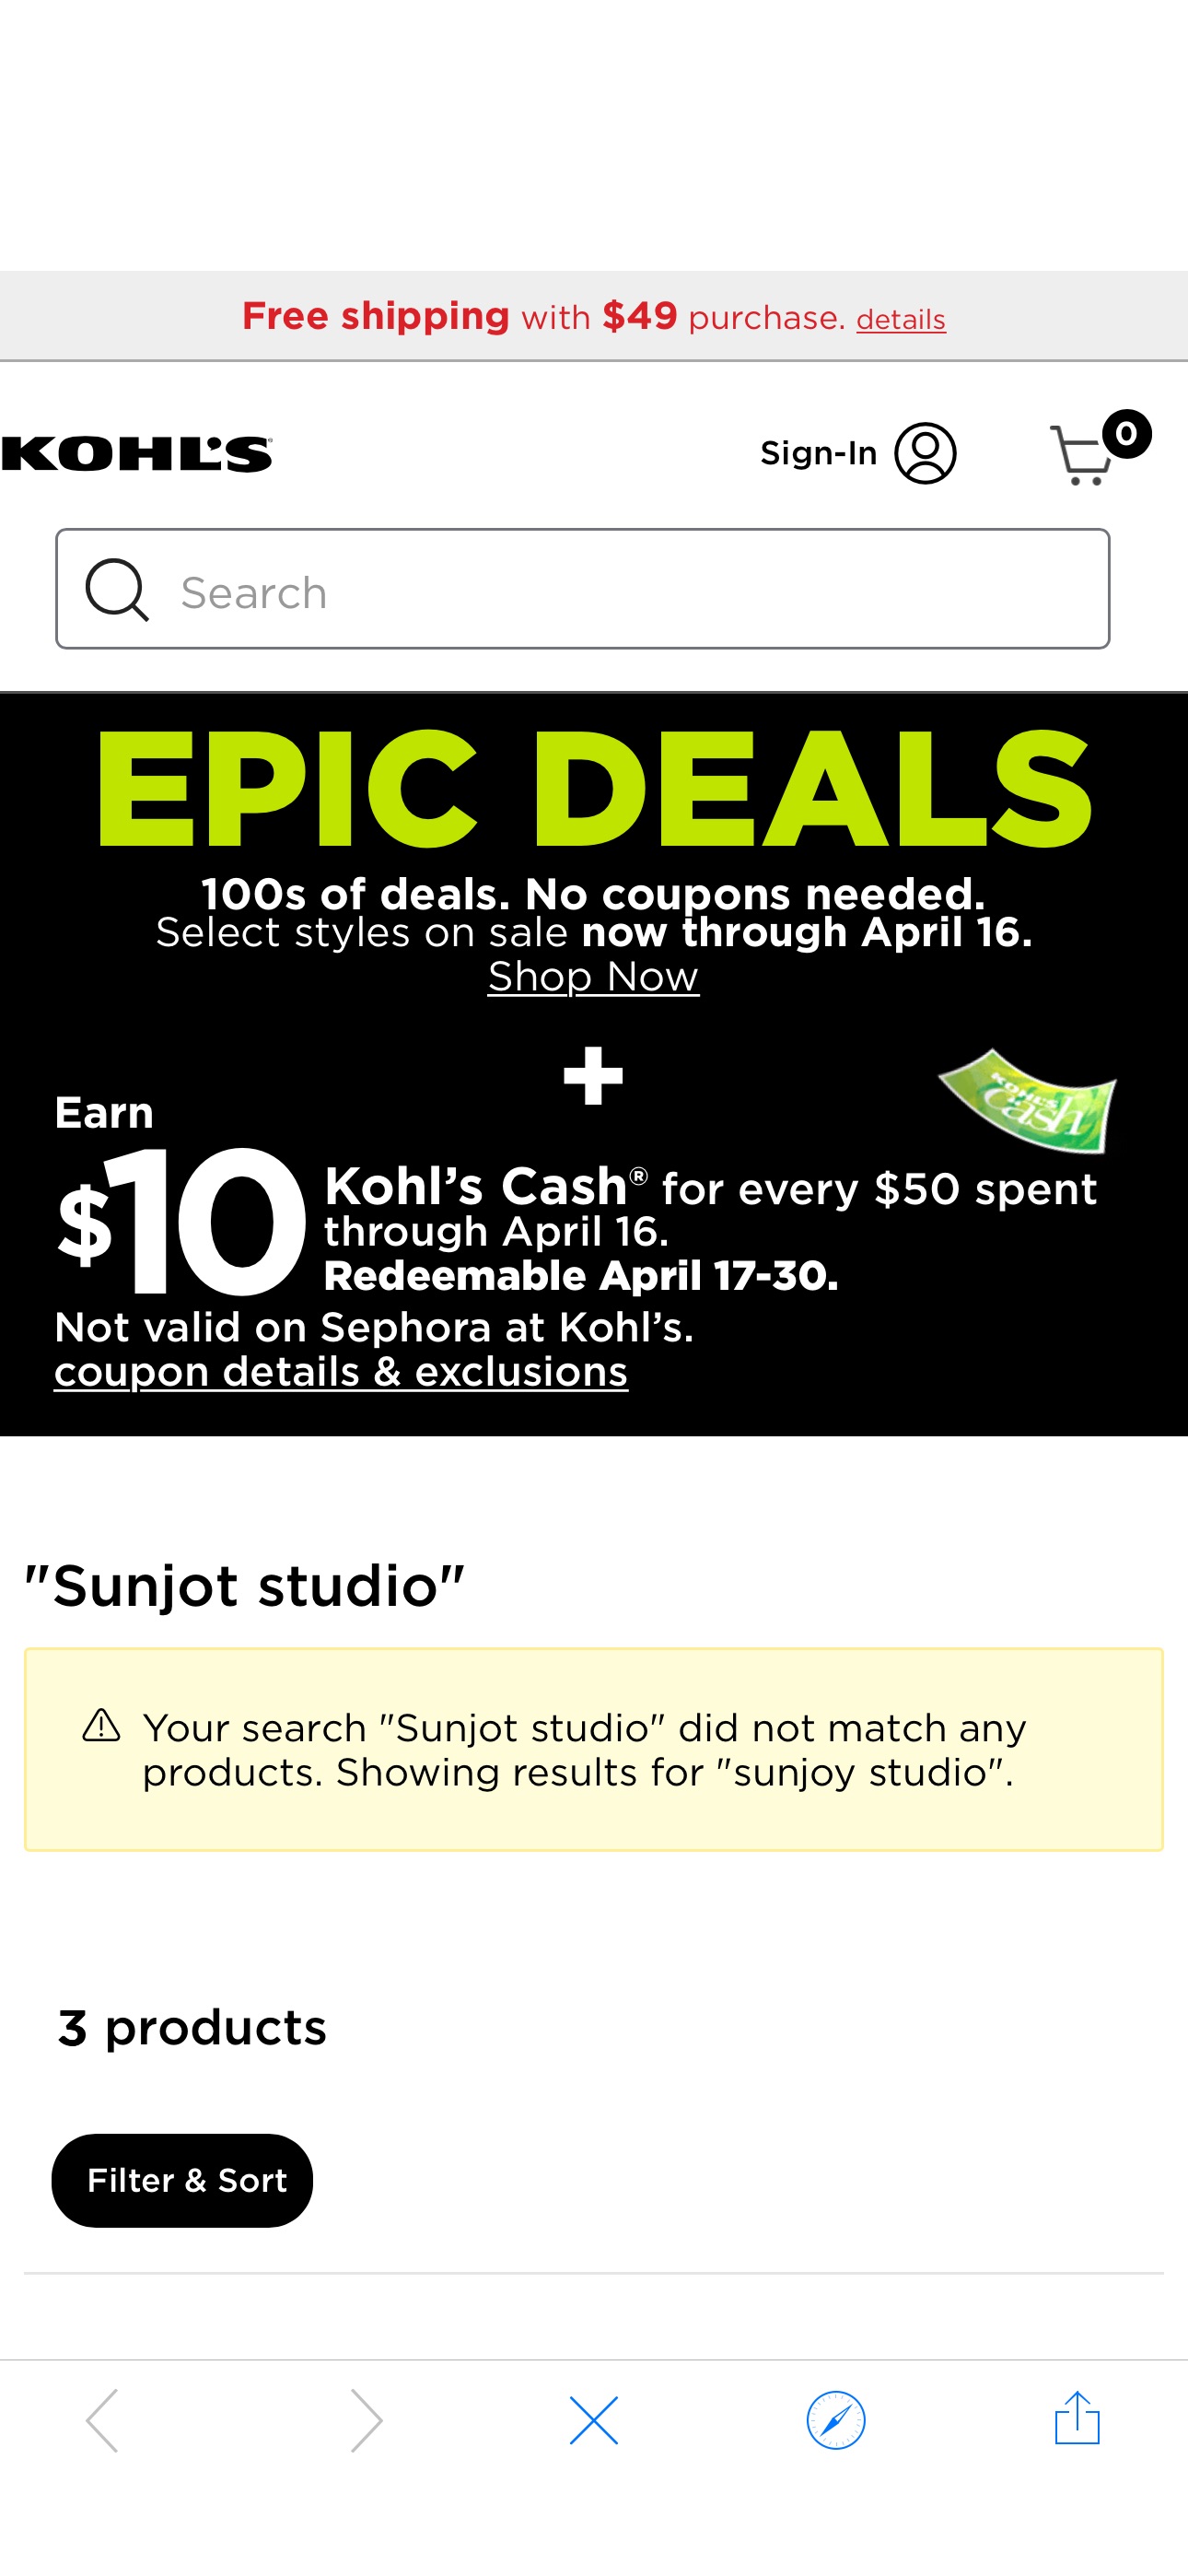 sunjoy studio | Kohl's Kohls官网桌子